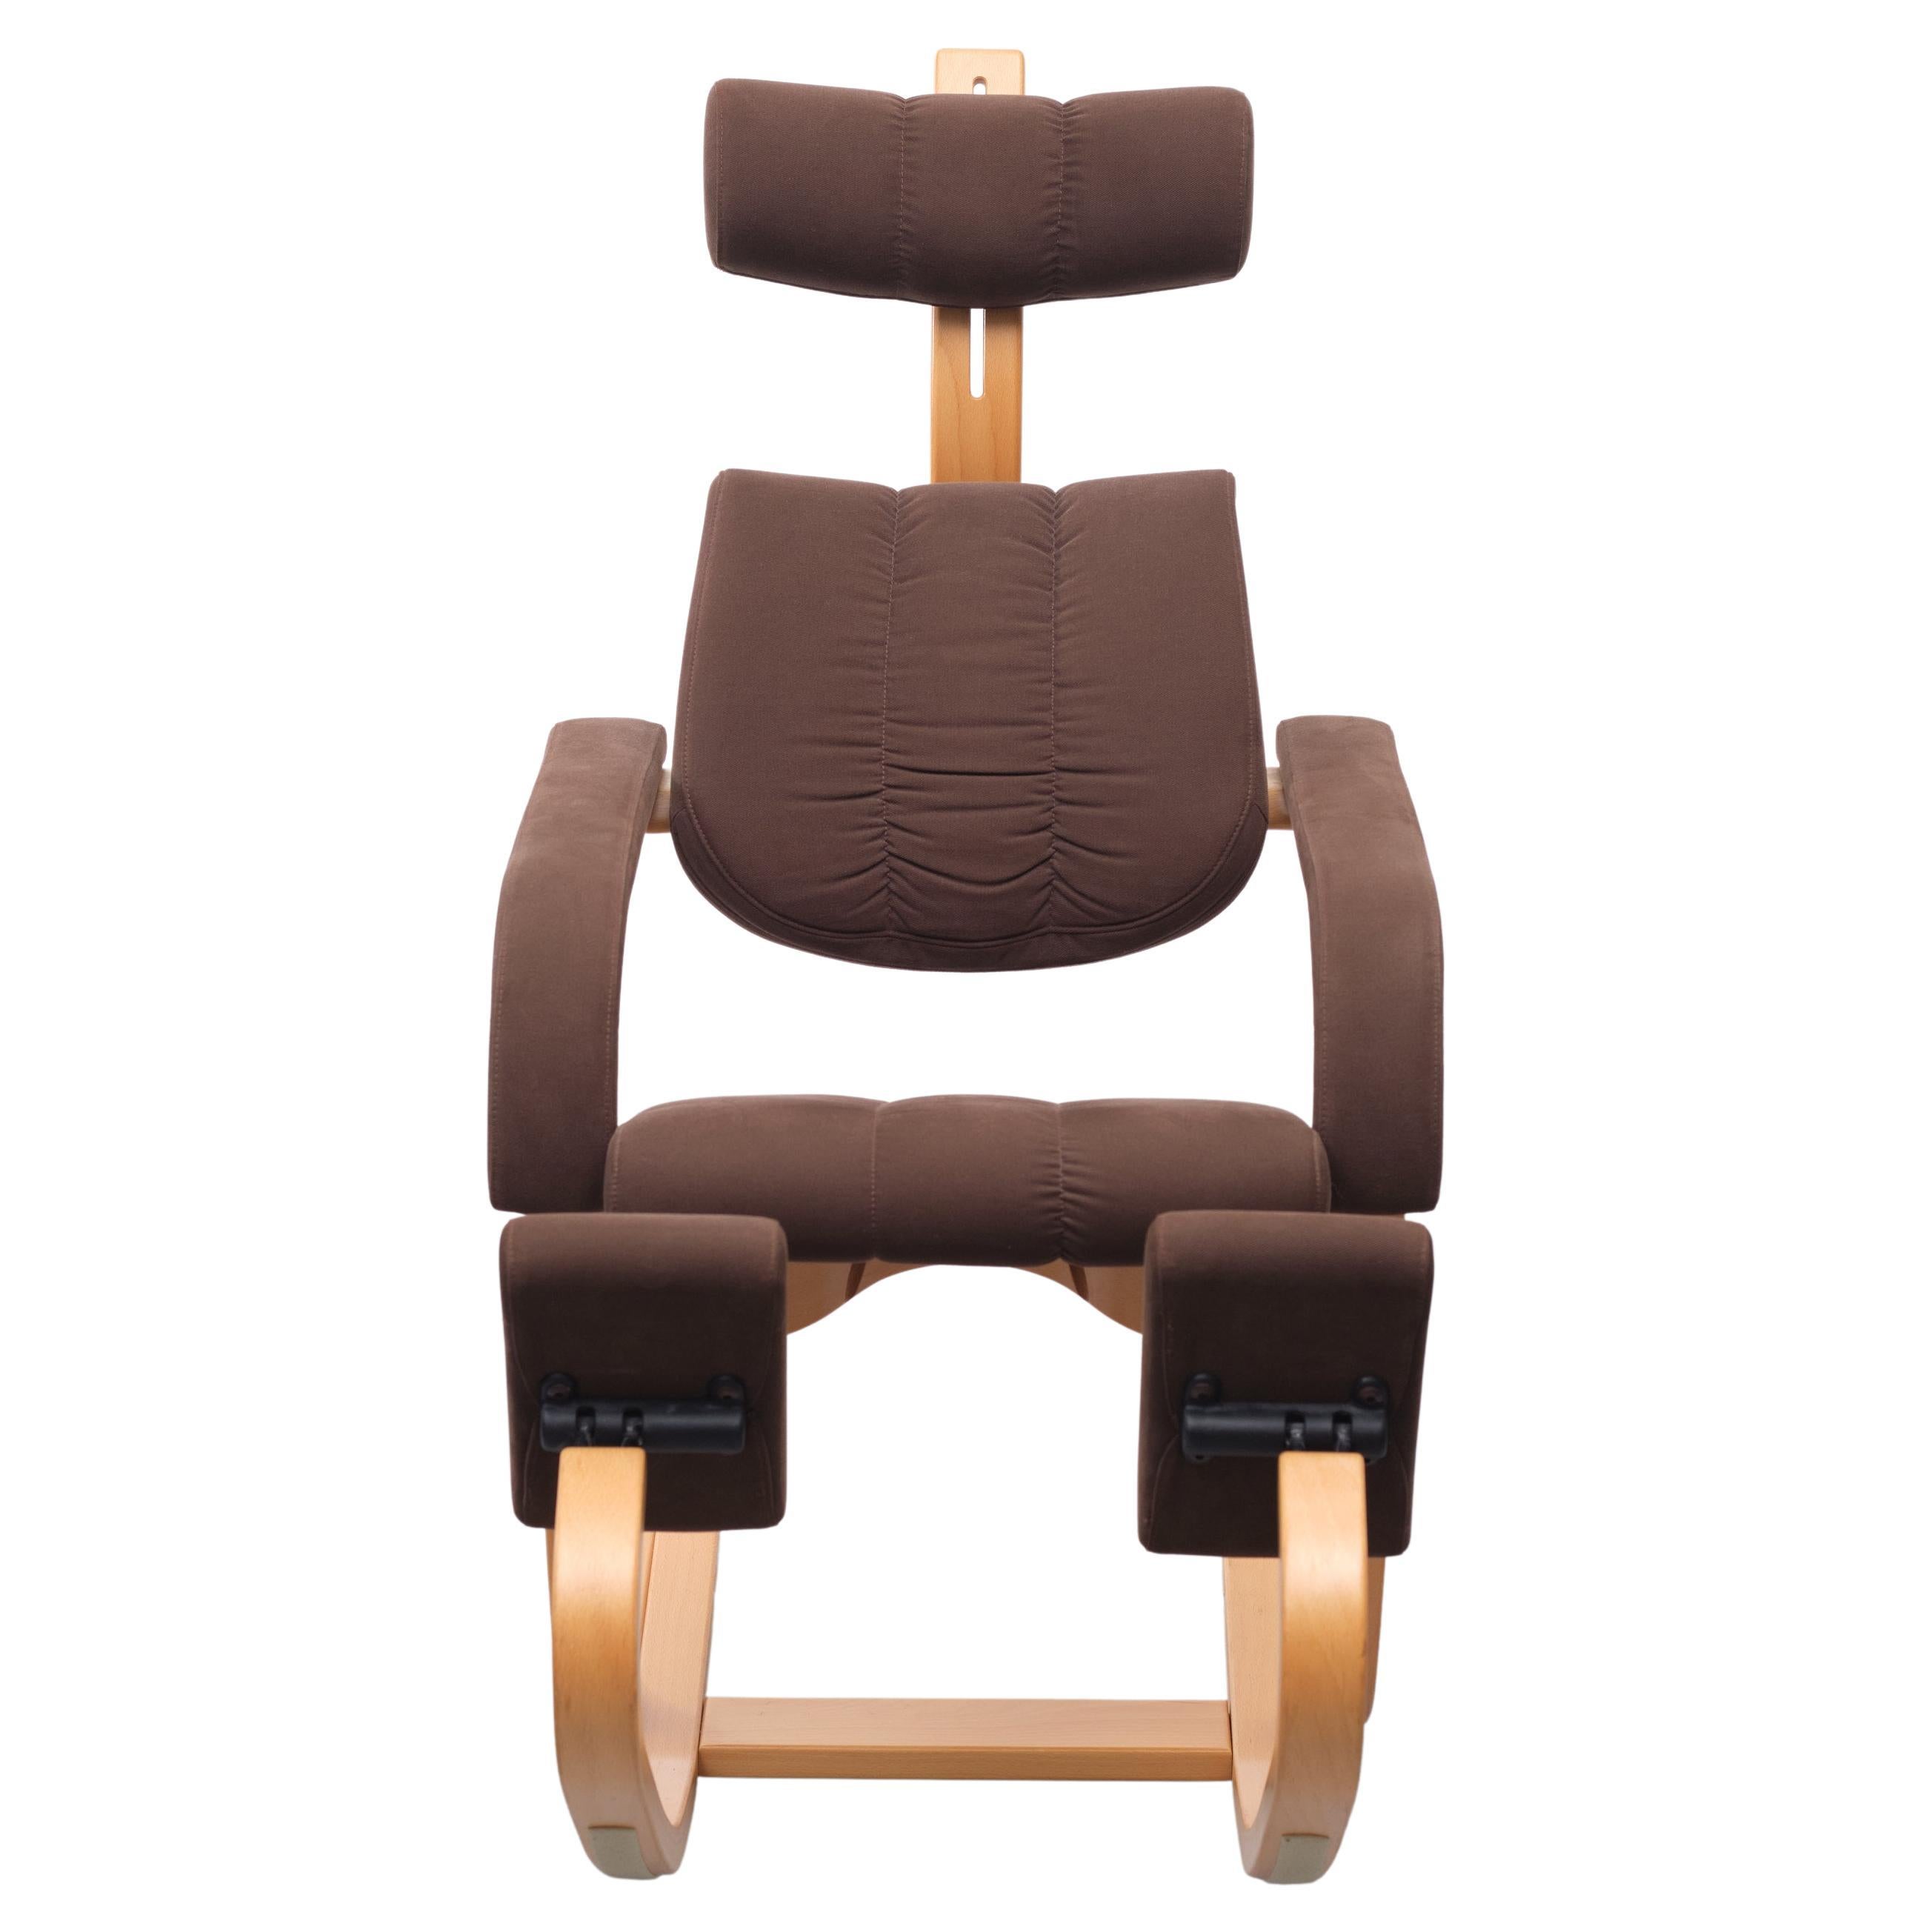 Dies ist der Duo Balance Stuhl von Peter Opsvik, mit Original-Etikett in einem Bild gezeigt, ein norwegischer Industriedesigner am besten für seine innovative und ergonomische Stühle bekannt. Der Winkel von Duo wird durch die Bewegungen des Körpers